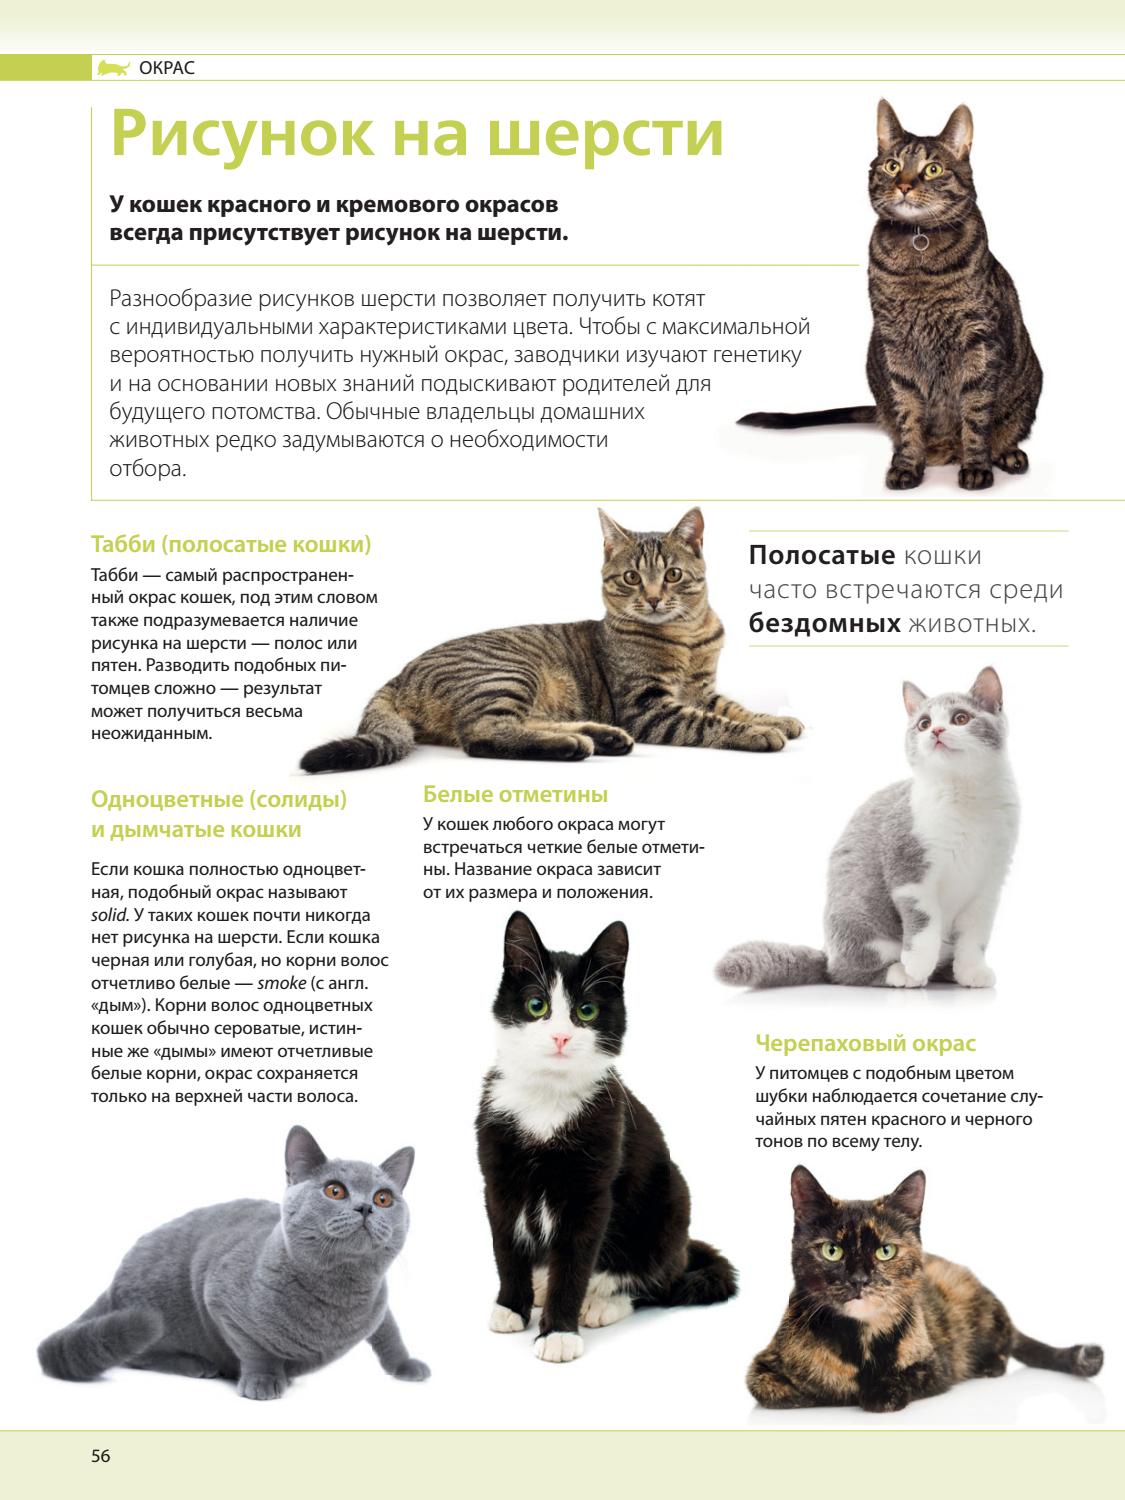 Породы кошек характеристики. Список пород кошек. Породы кошек с названиями. Расцветки кошек названия. Порода и окрас кошек.